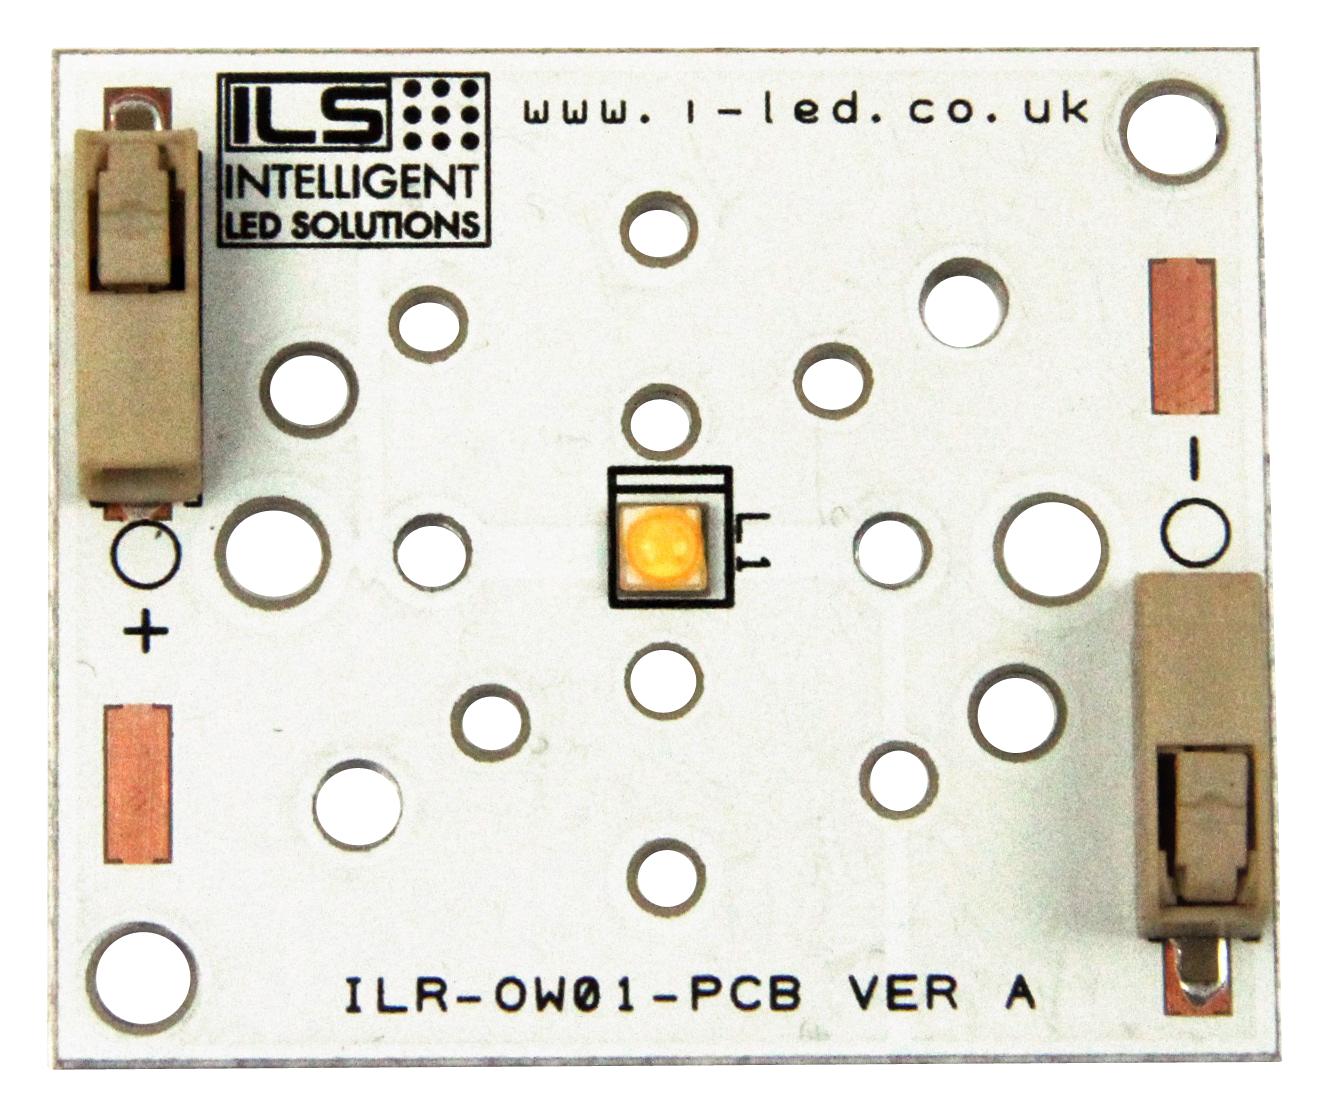 ILR-XP01-S260-LEDIL-SC201.